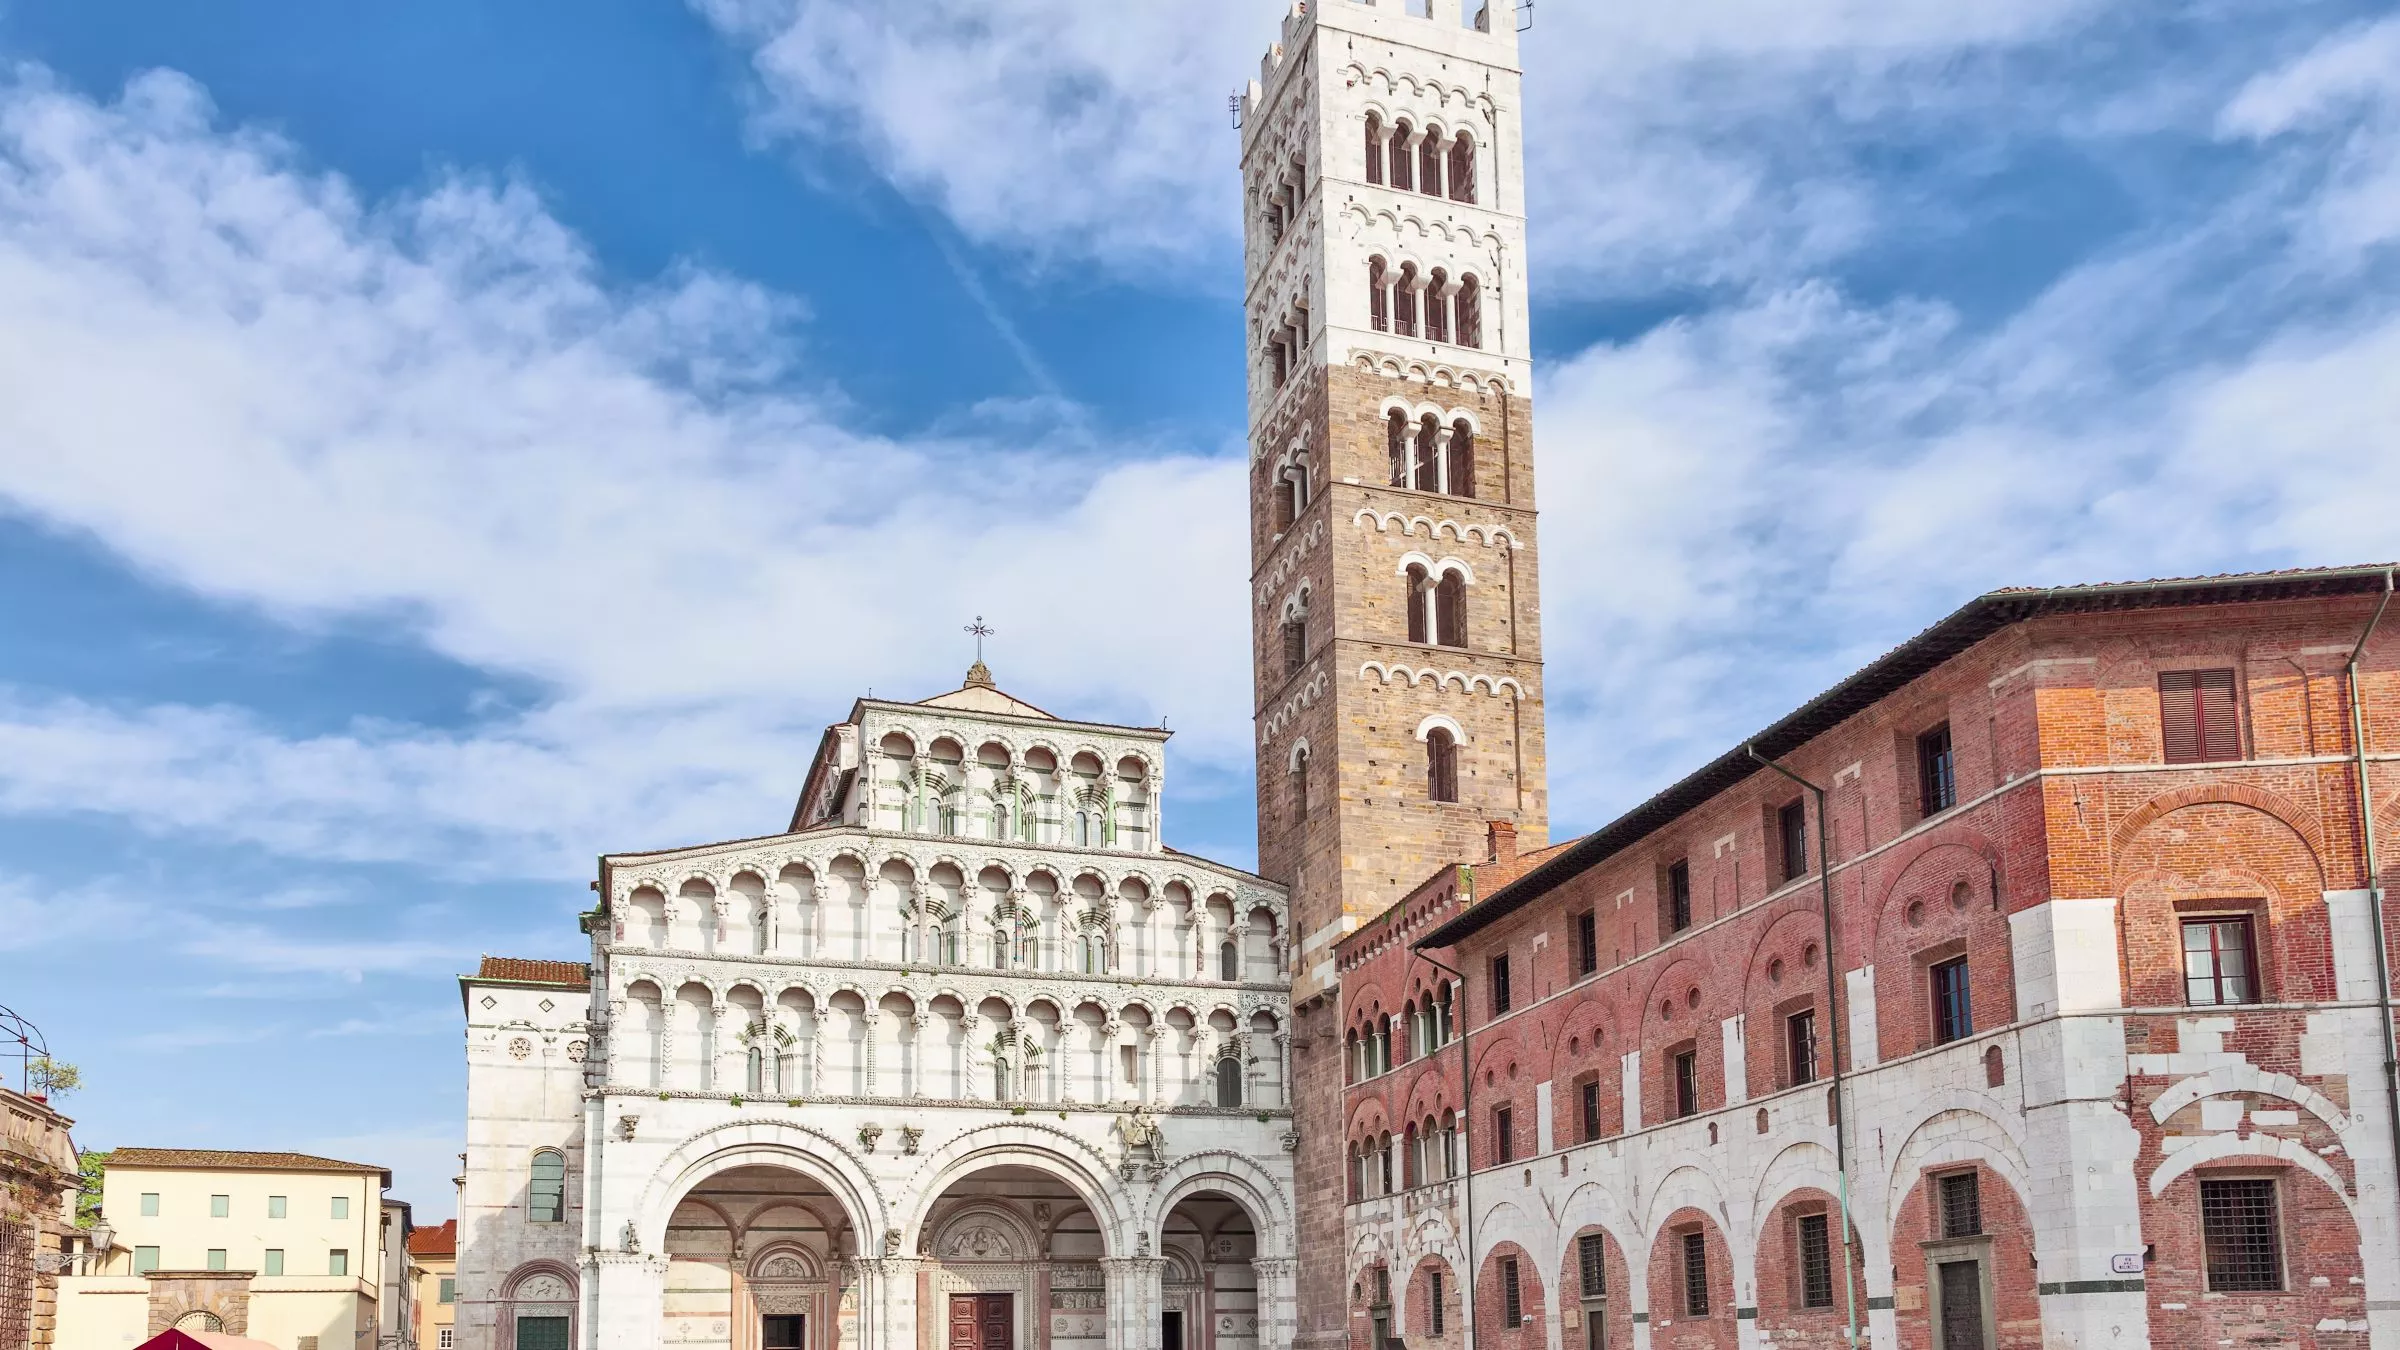 Die Kathedrale von San Martino mit ihrem Glockenturm prägt das Stadtbild von Lucca bereits seit dem 11. Jahrhundert